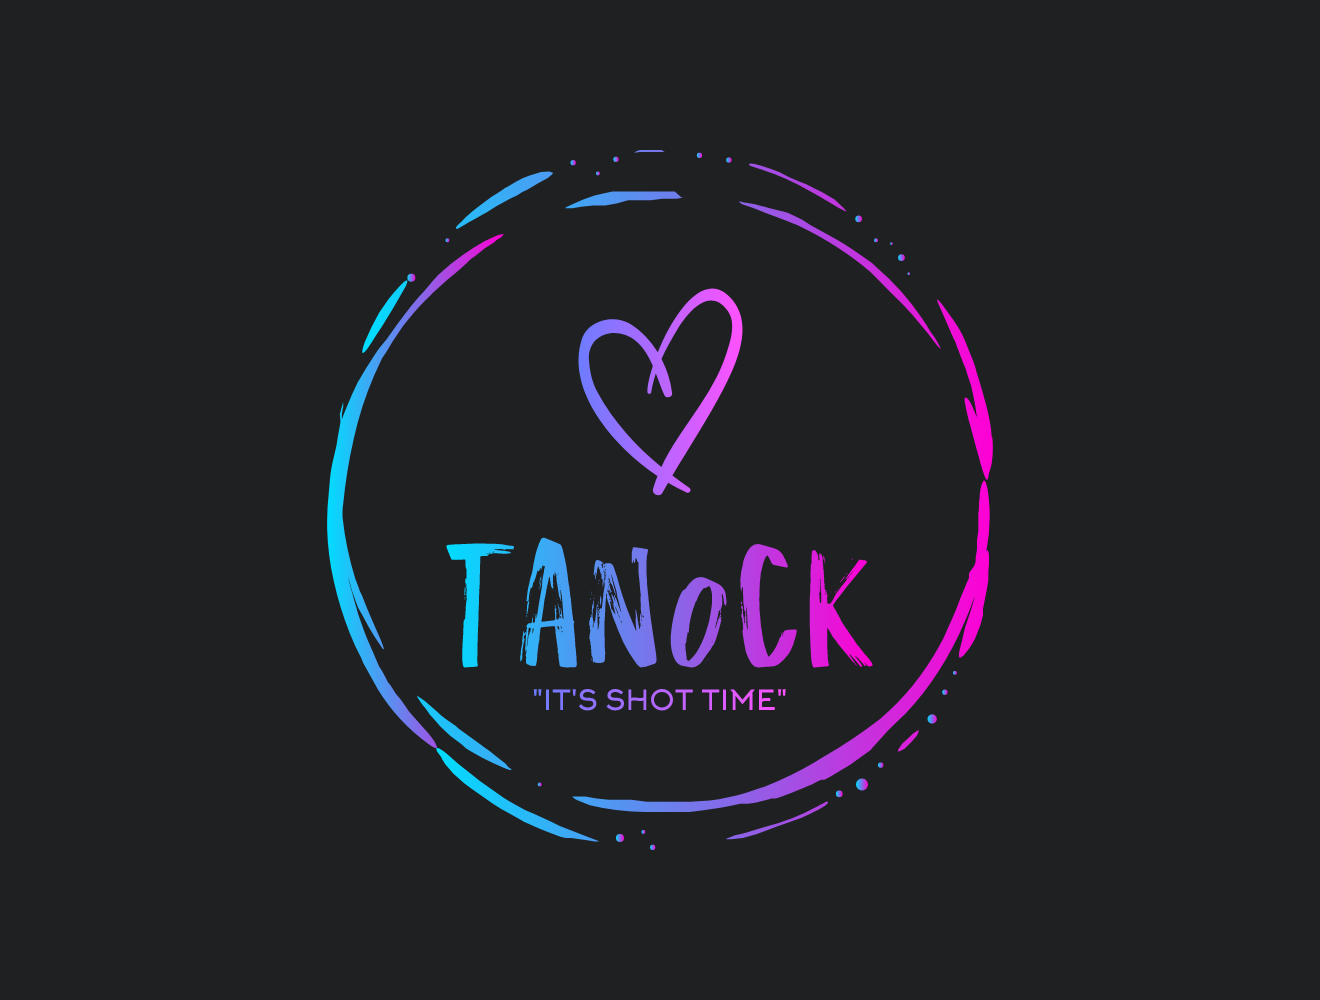 Tan0ck